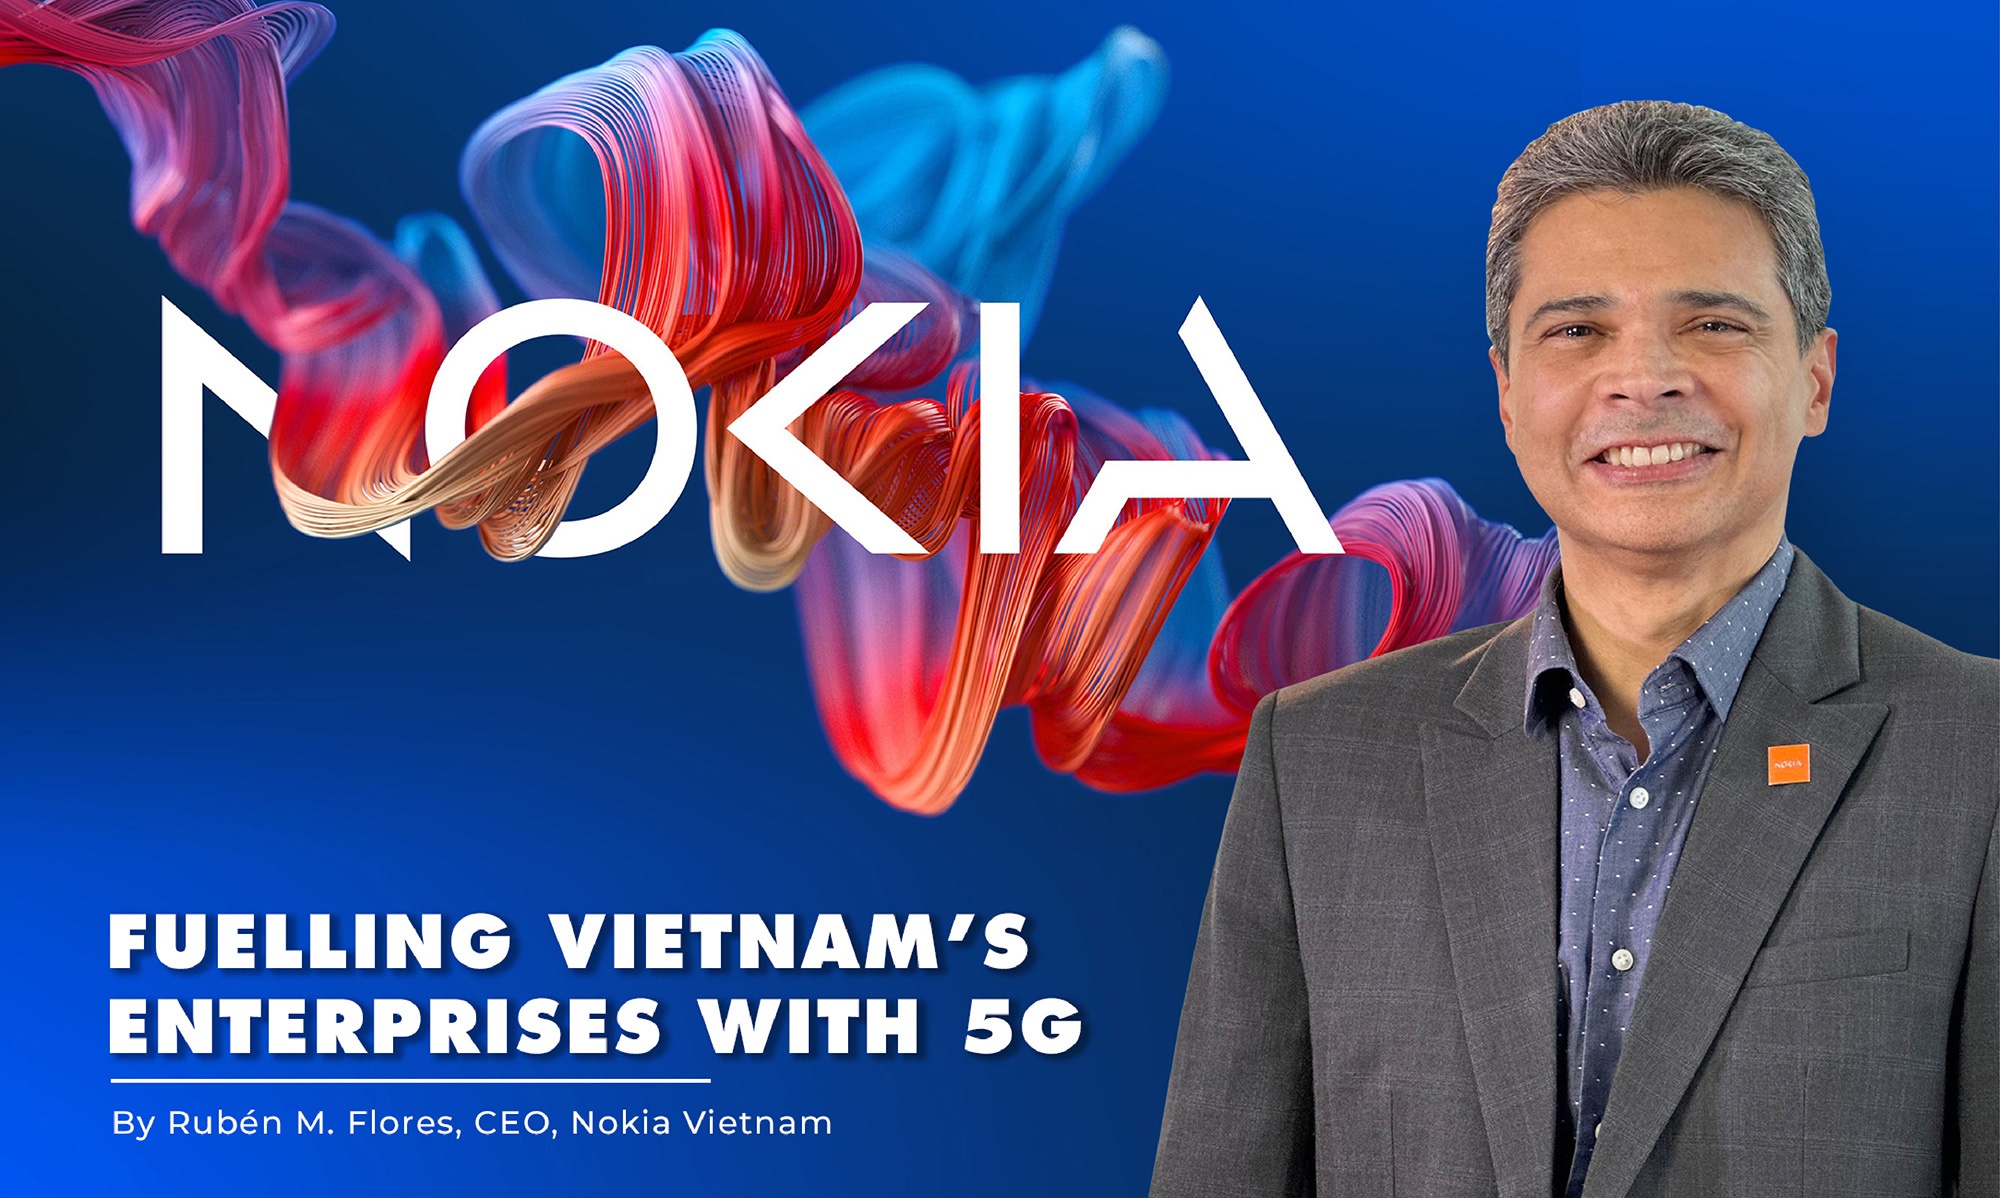 Fuelling Vietnam's enterprises with 5G